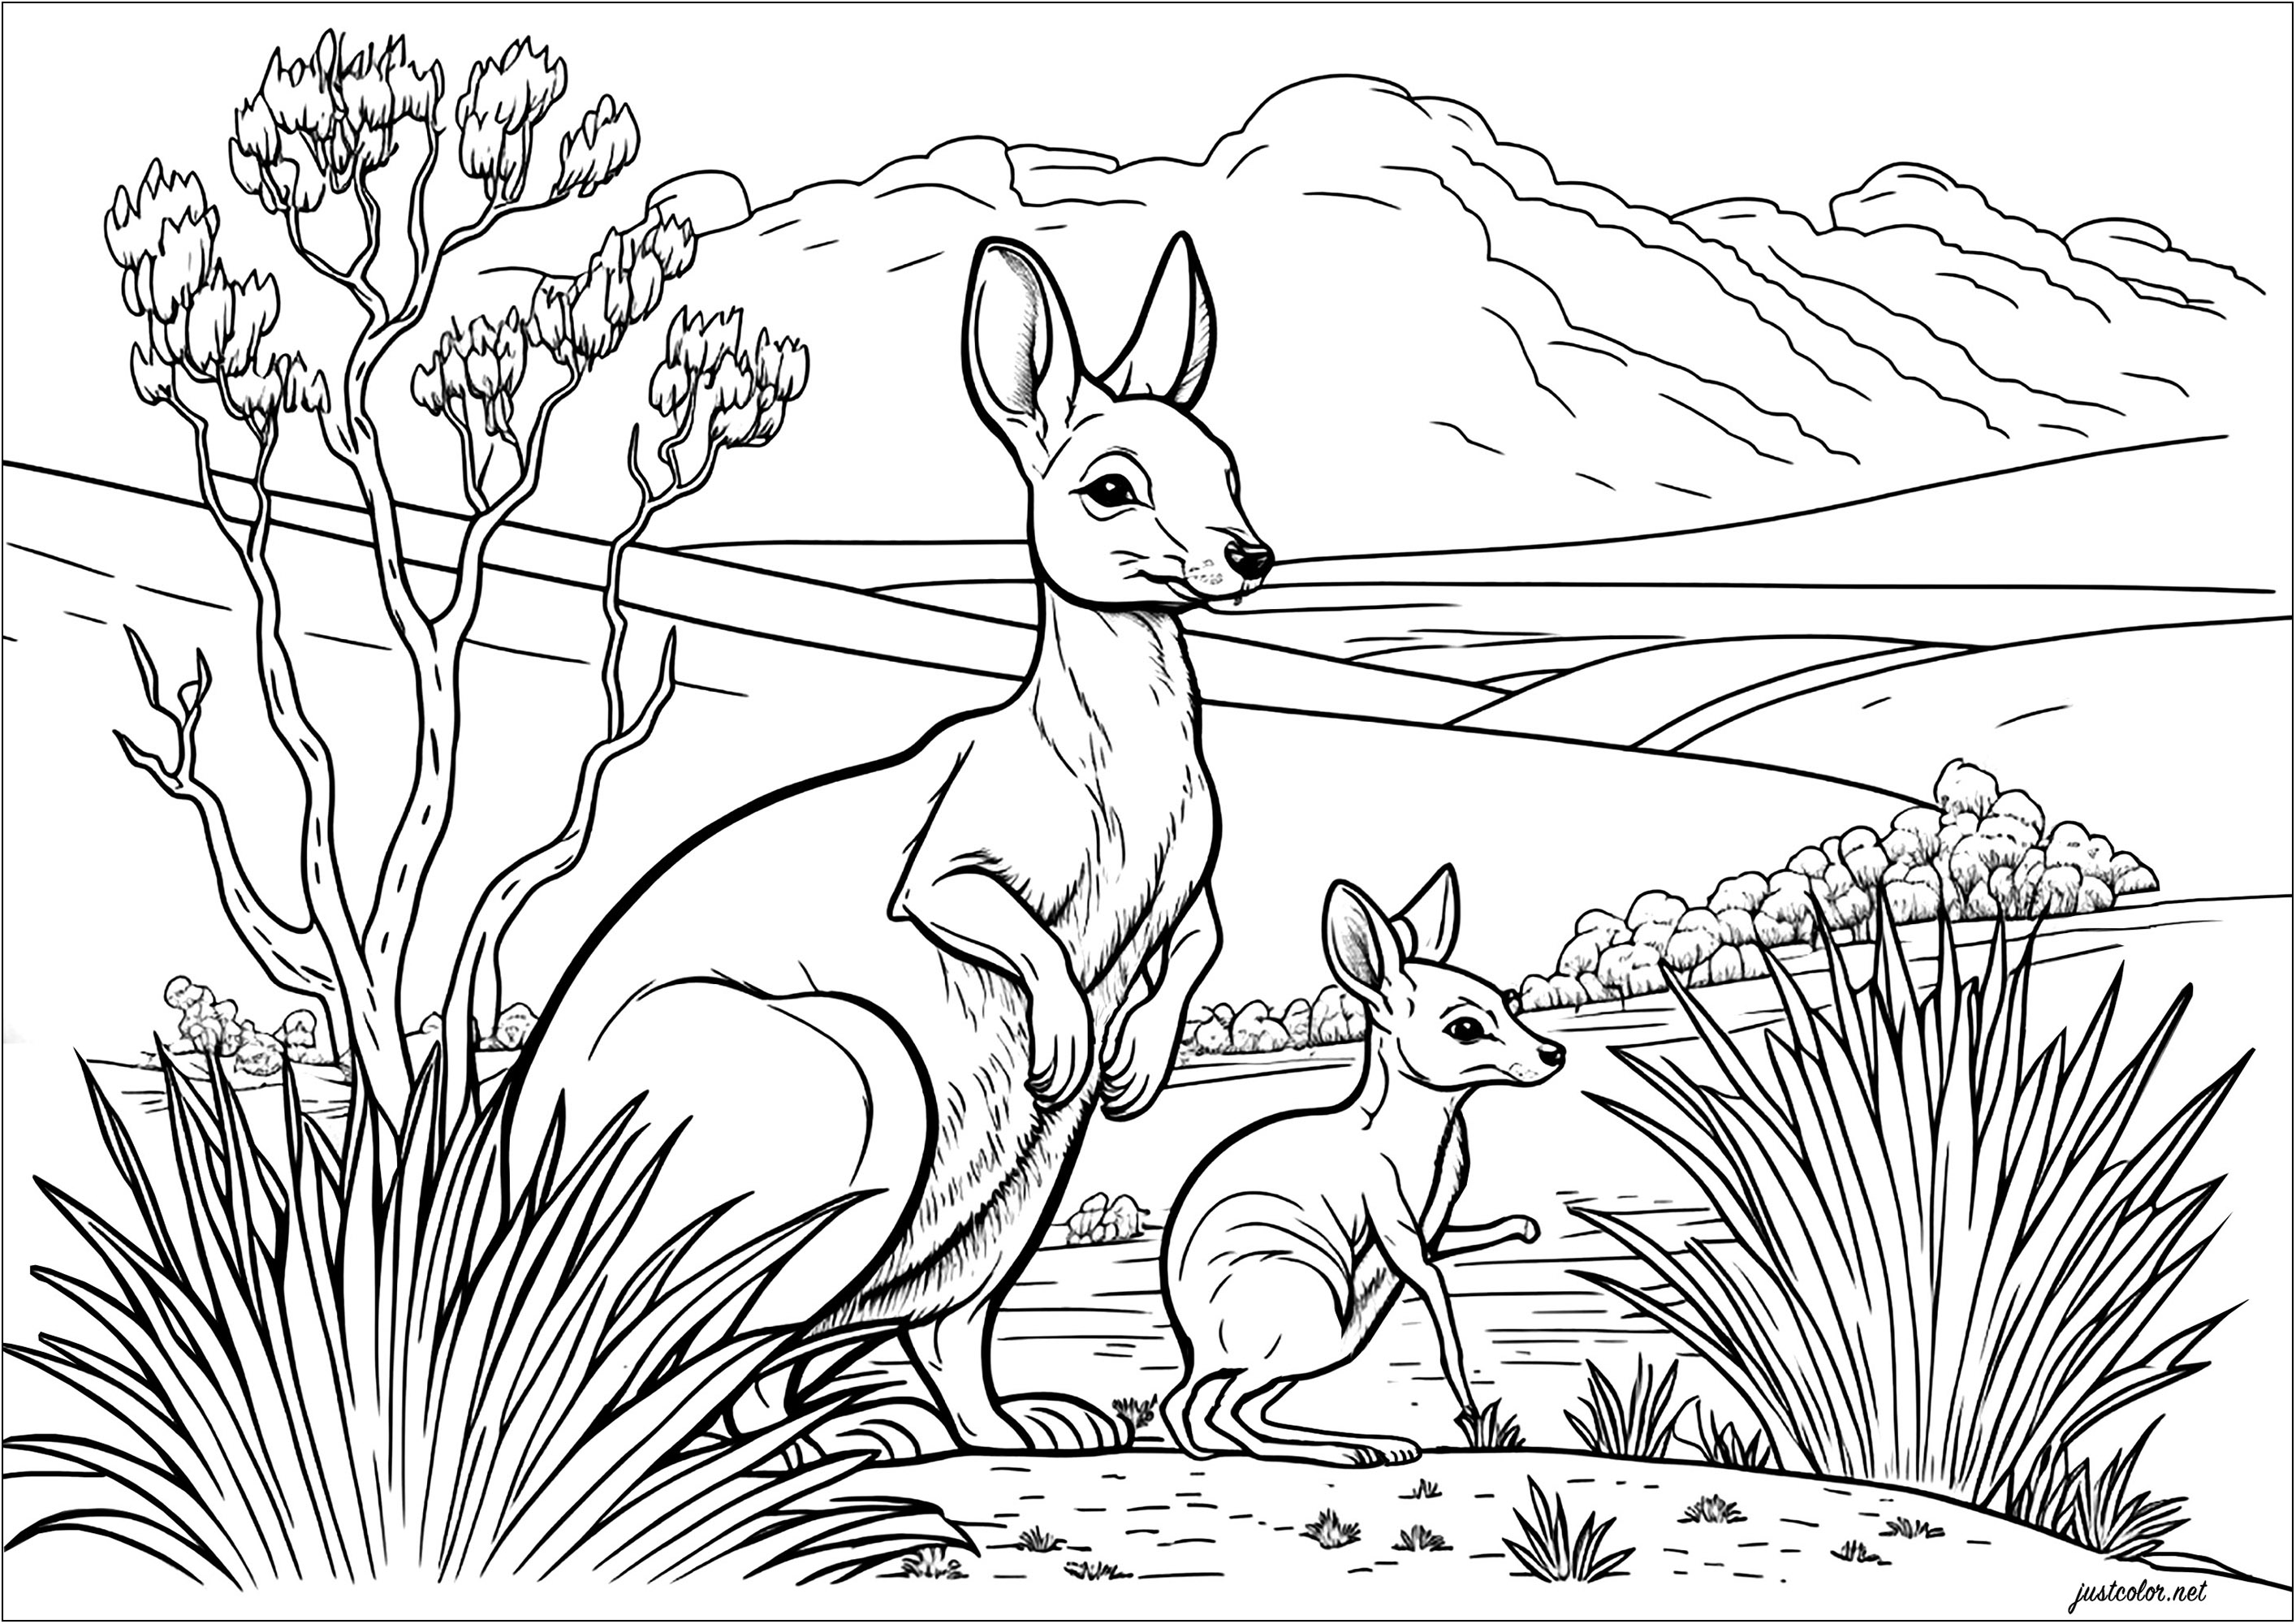 Pinta esta mãe canguru e a sua cria. Explora a paisagem do deserto australiano com cactos e céus ensolarados, usando a tua imaginação para dar vida a esta cena. Deixe a sua criatividade correr à solta com cores e junte-se à aventura destes dois cangurus.